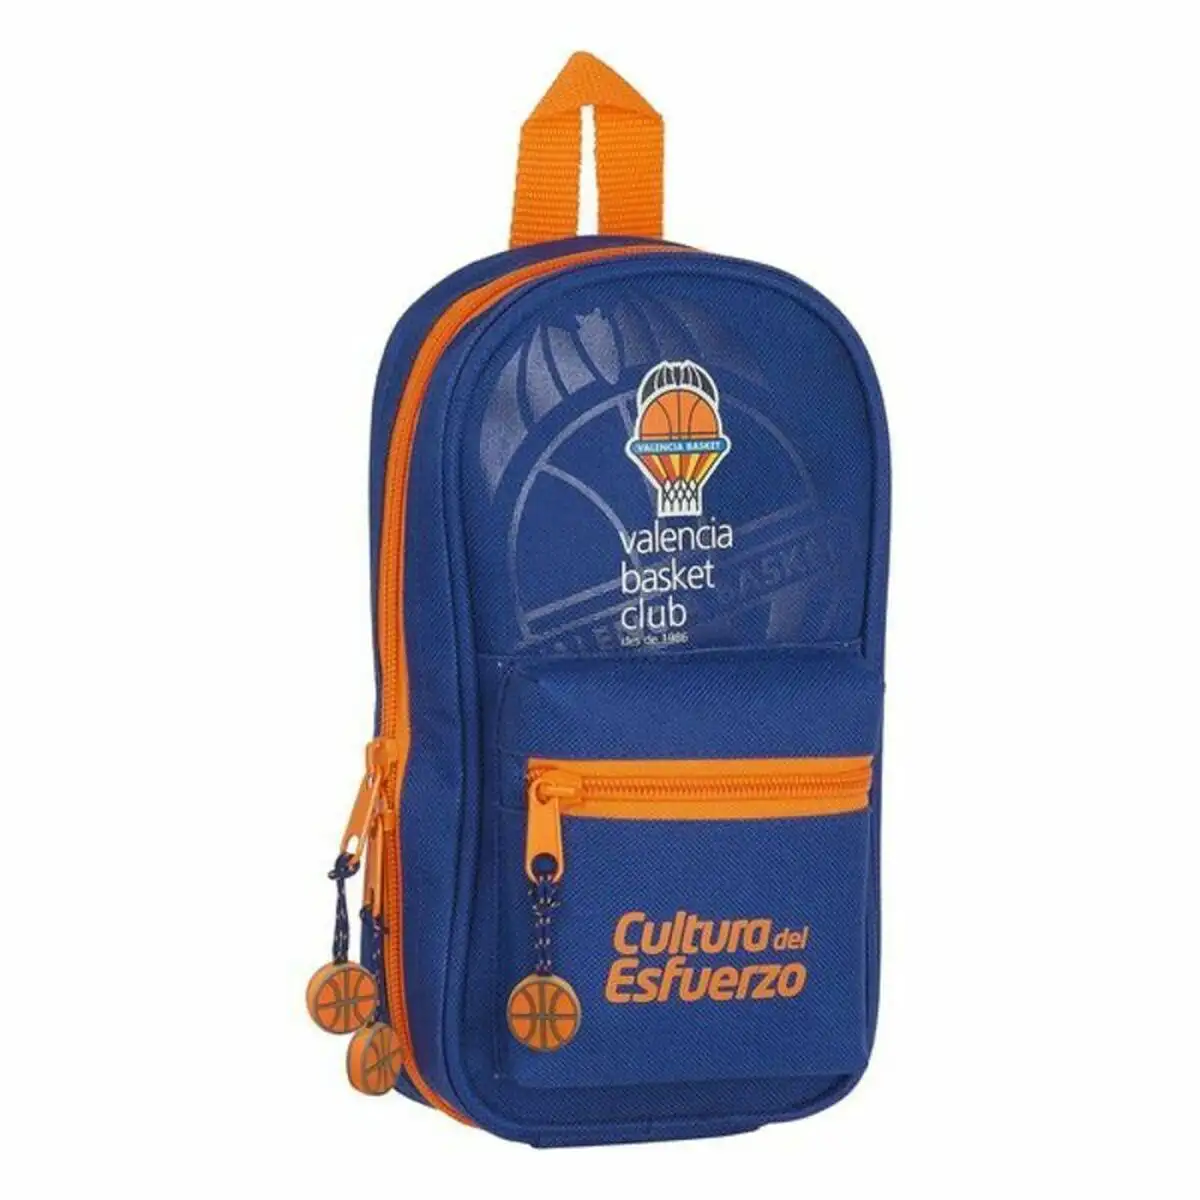 Plumier sac a dos valencia basket bleu orange_4256. DIAYTAR SENEGAL - Votre Destination pour un Shopping Inégalé. Naviguez à travers notre sélection minutieuse pour trouver des produits qui répondent à tous vos besoins.